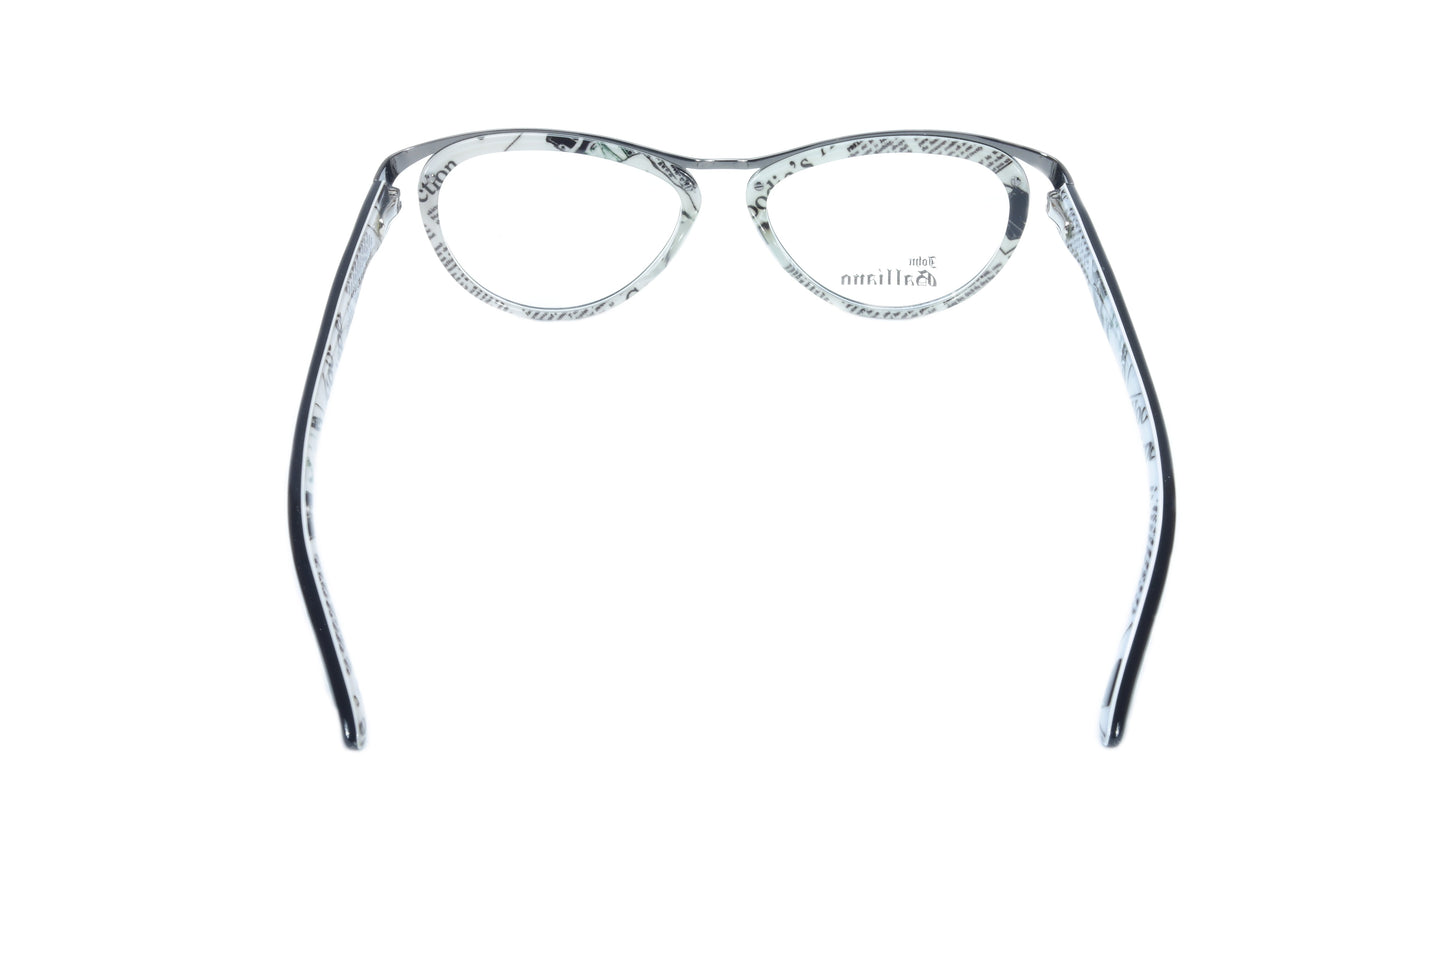 John Galliano Eyeglasses Frame JG5008 004 Acetate Metal Italy Made - Frame Bay